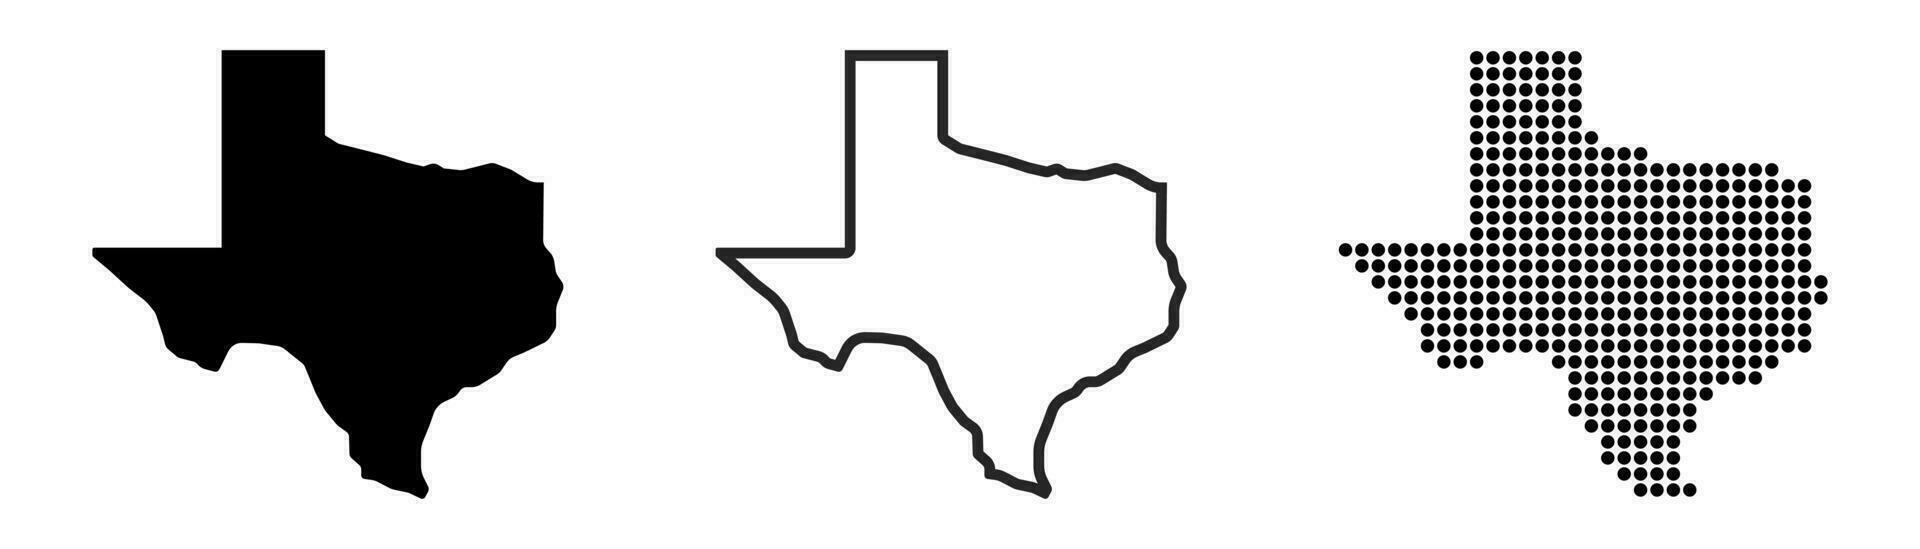 Texas carta geografica contorno. Texas stato carta geografica. glifo e schema Texas carta geografica. noi stato carta geografica. vettore